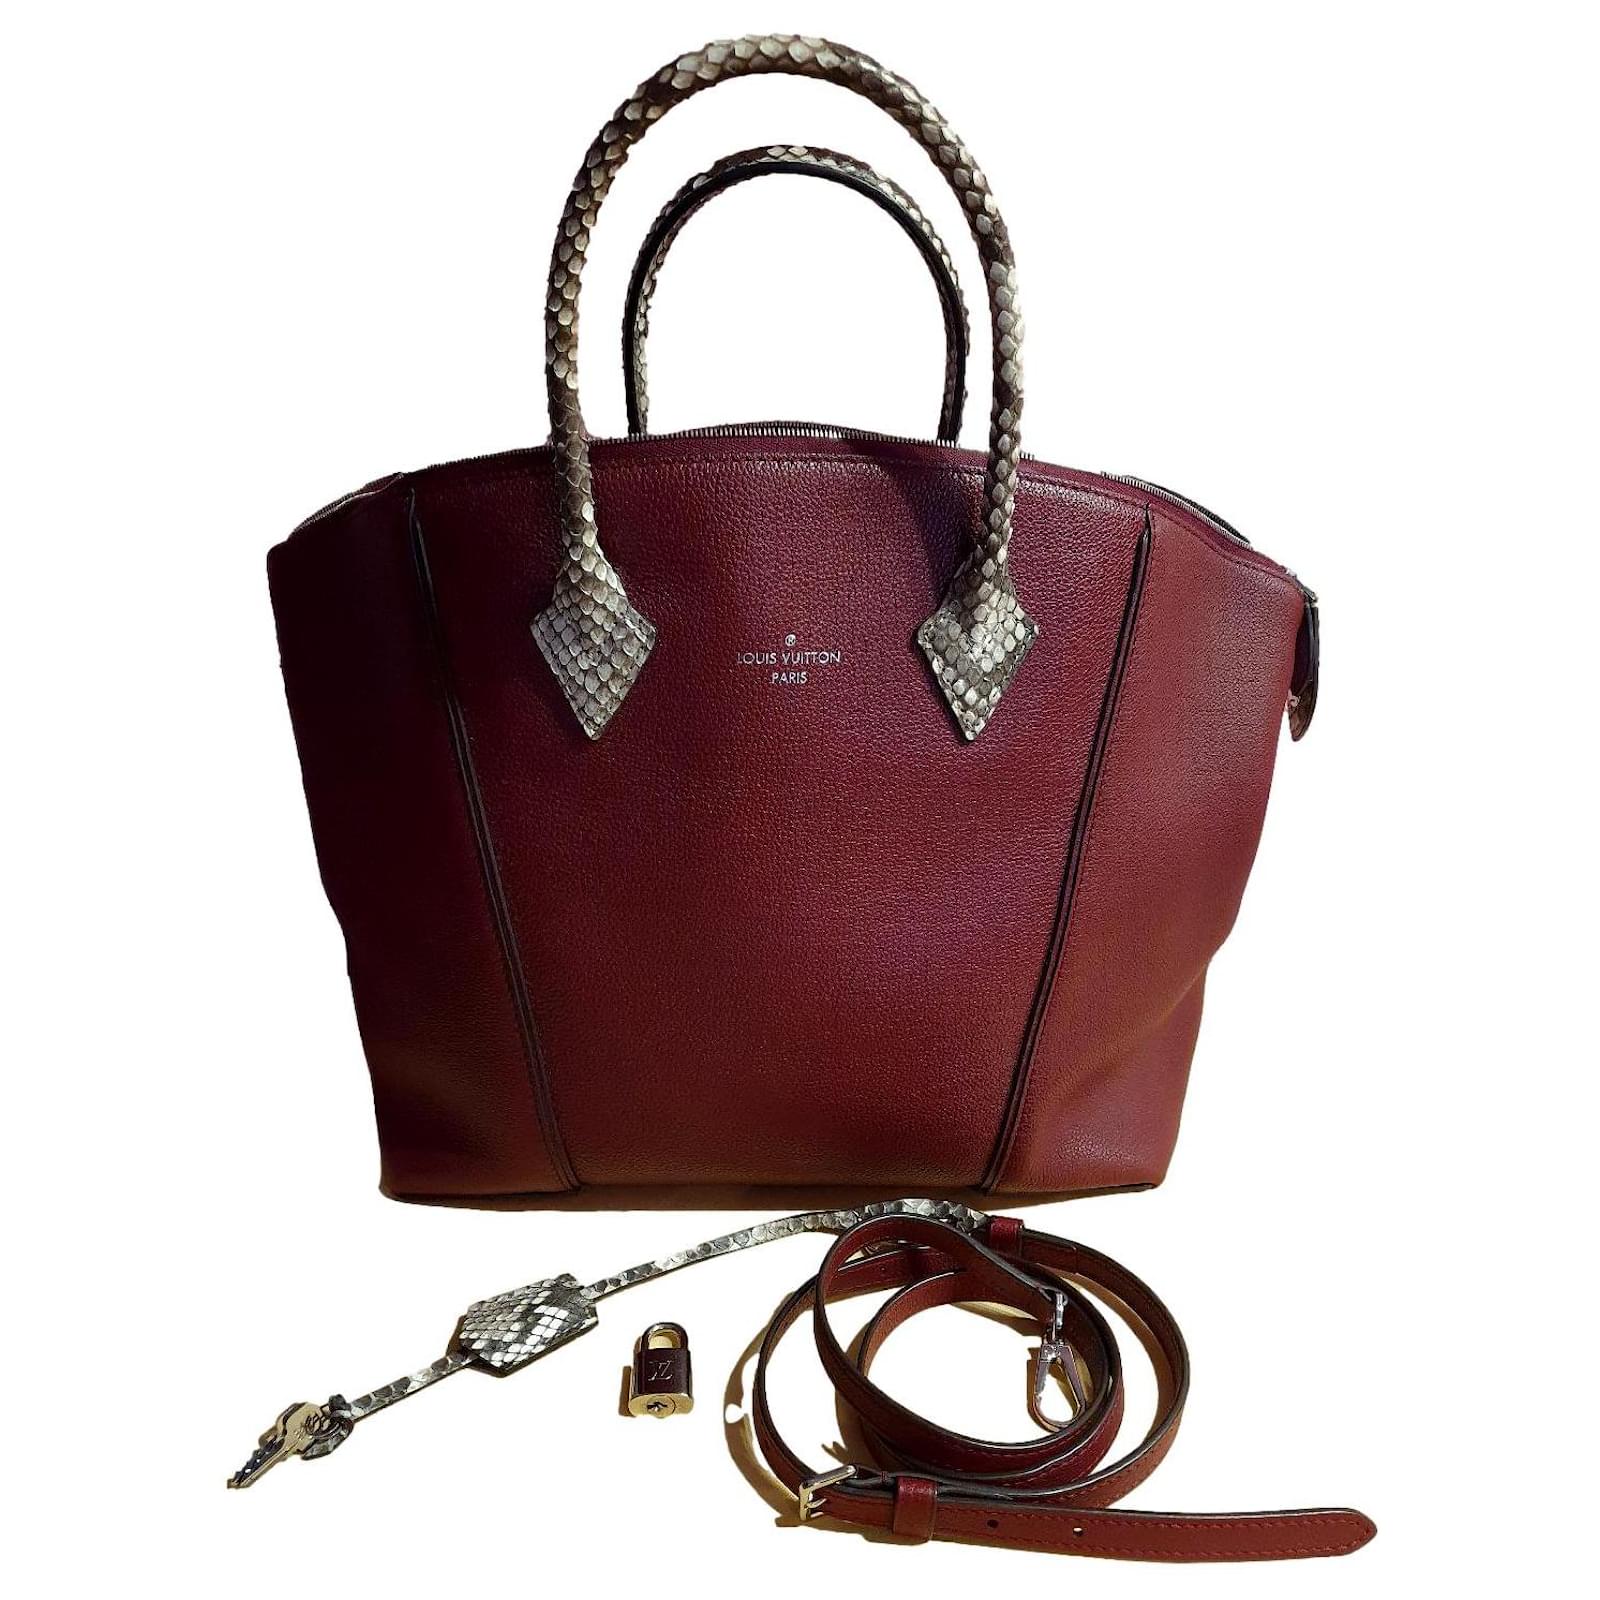 Lock It MM High End Leathers - Women - Handbags